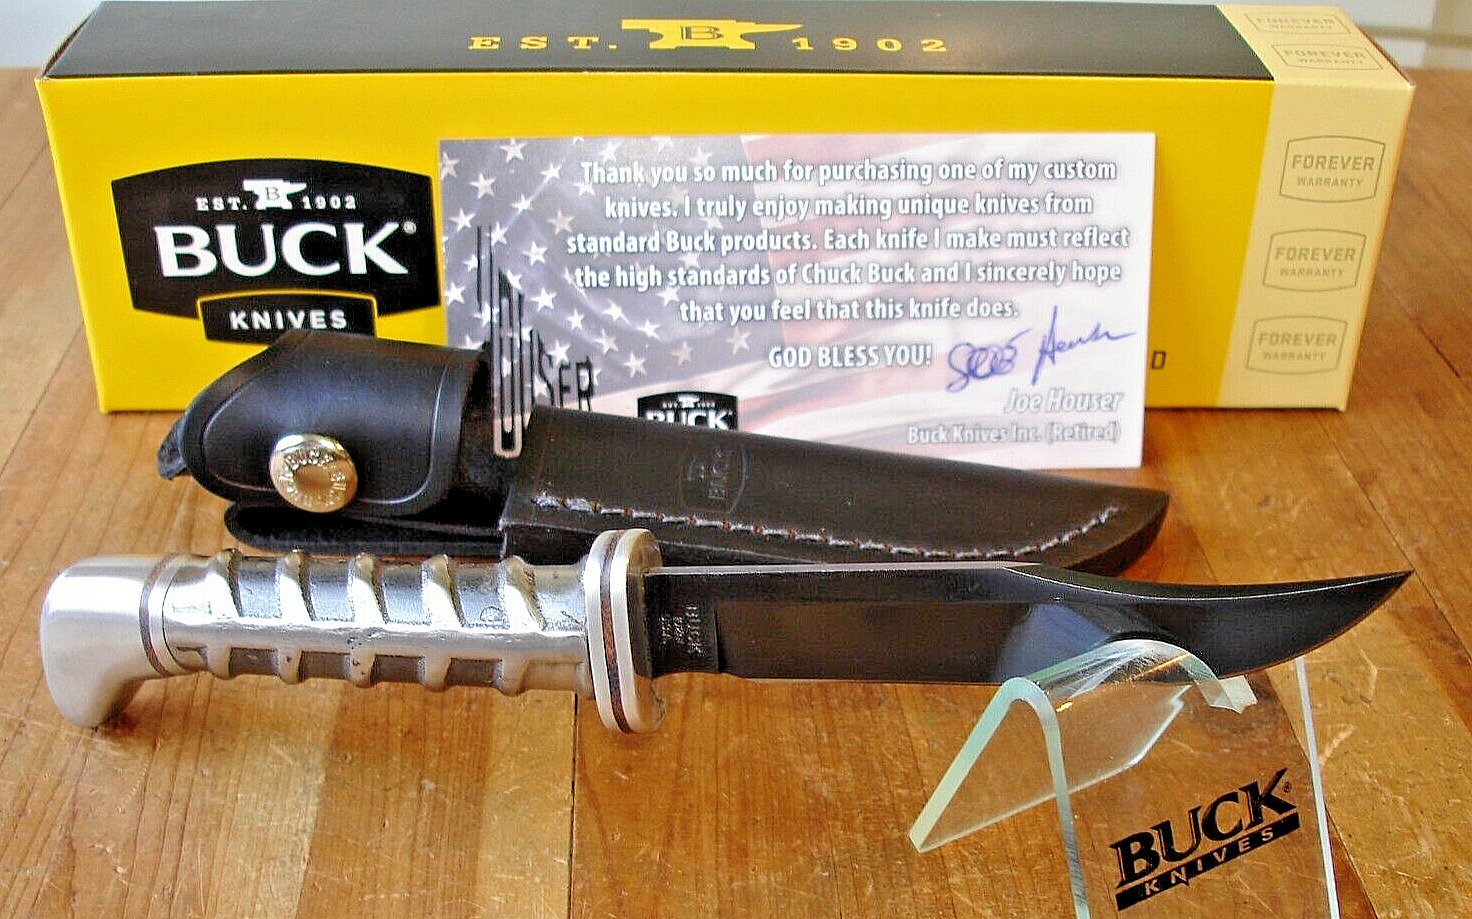 JOE HOUSER CUSTOM BUCK KNIFE 102 WOODSMAN REBAR HANDLE BLACK 5160 BLADE + SHEATH